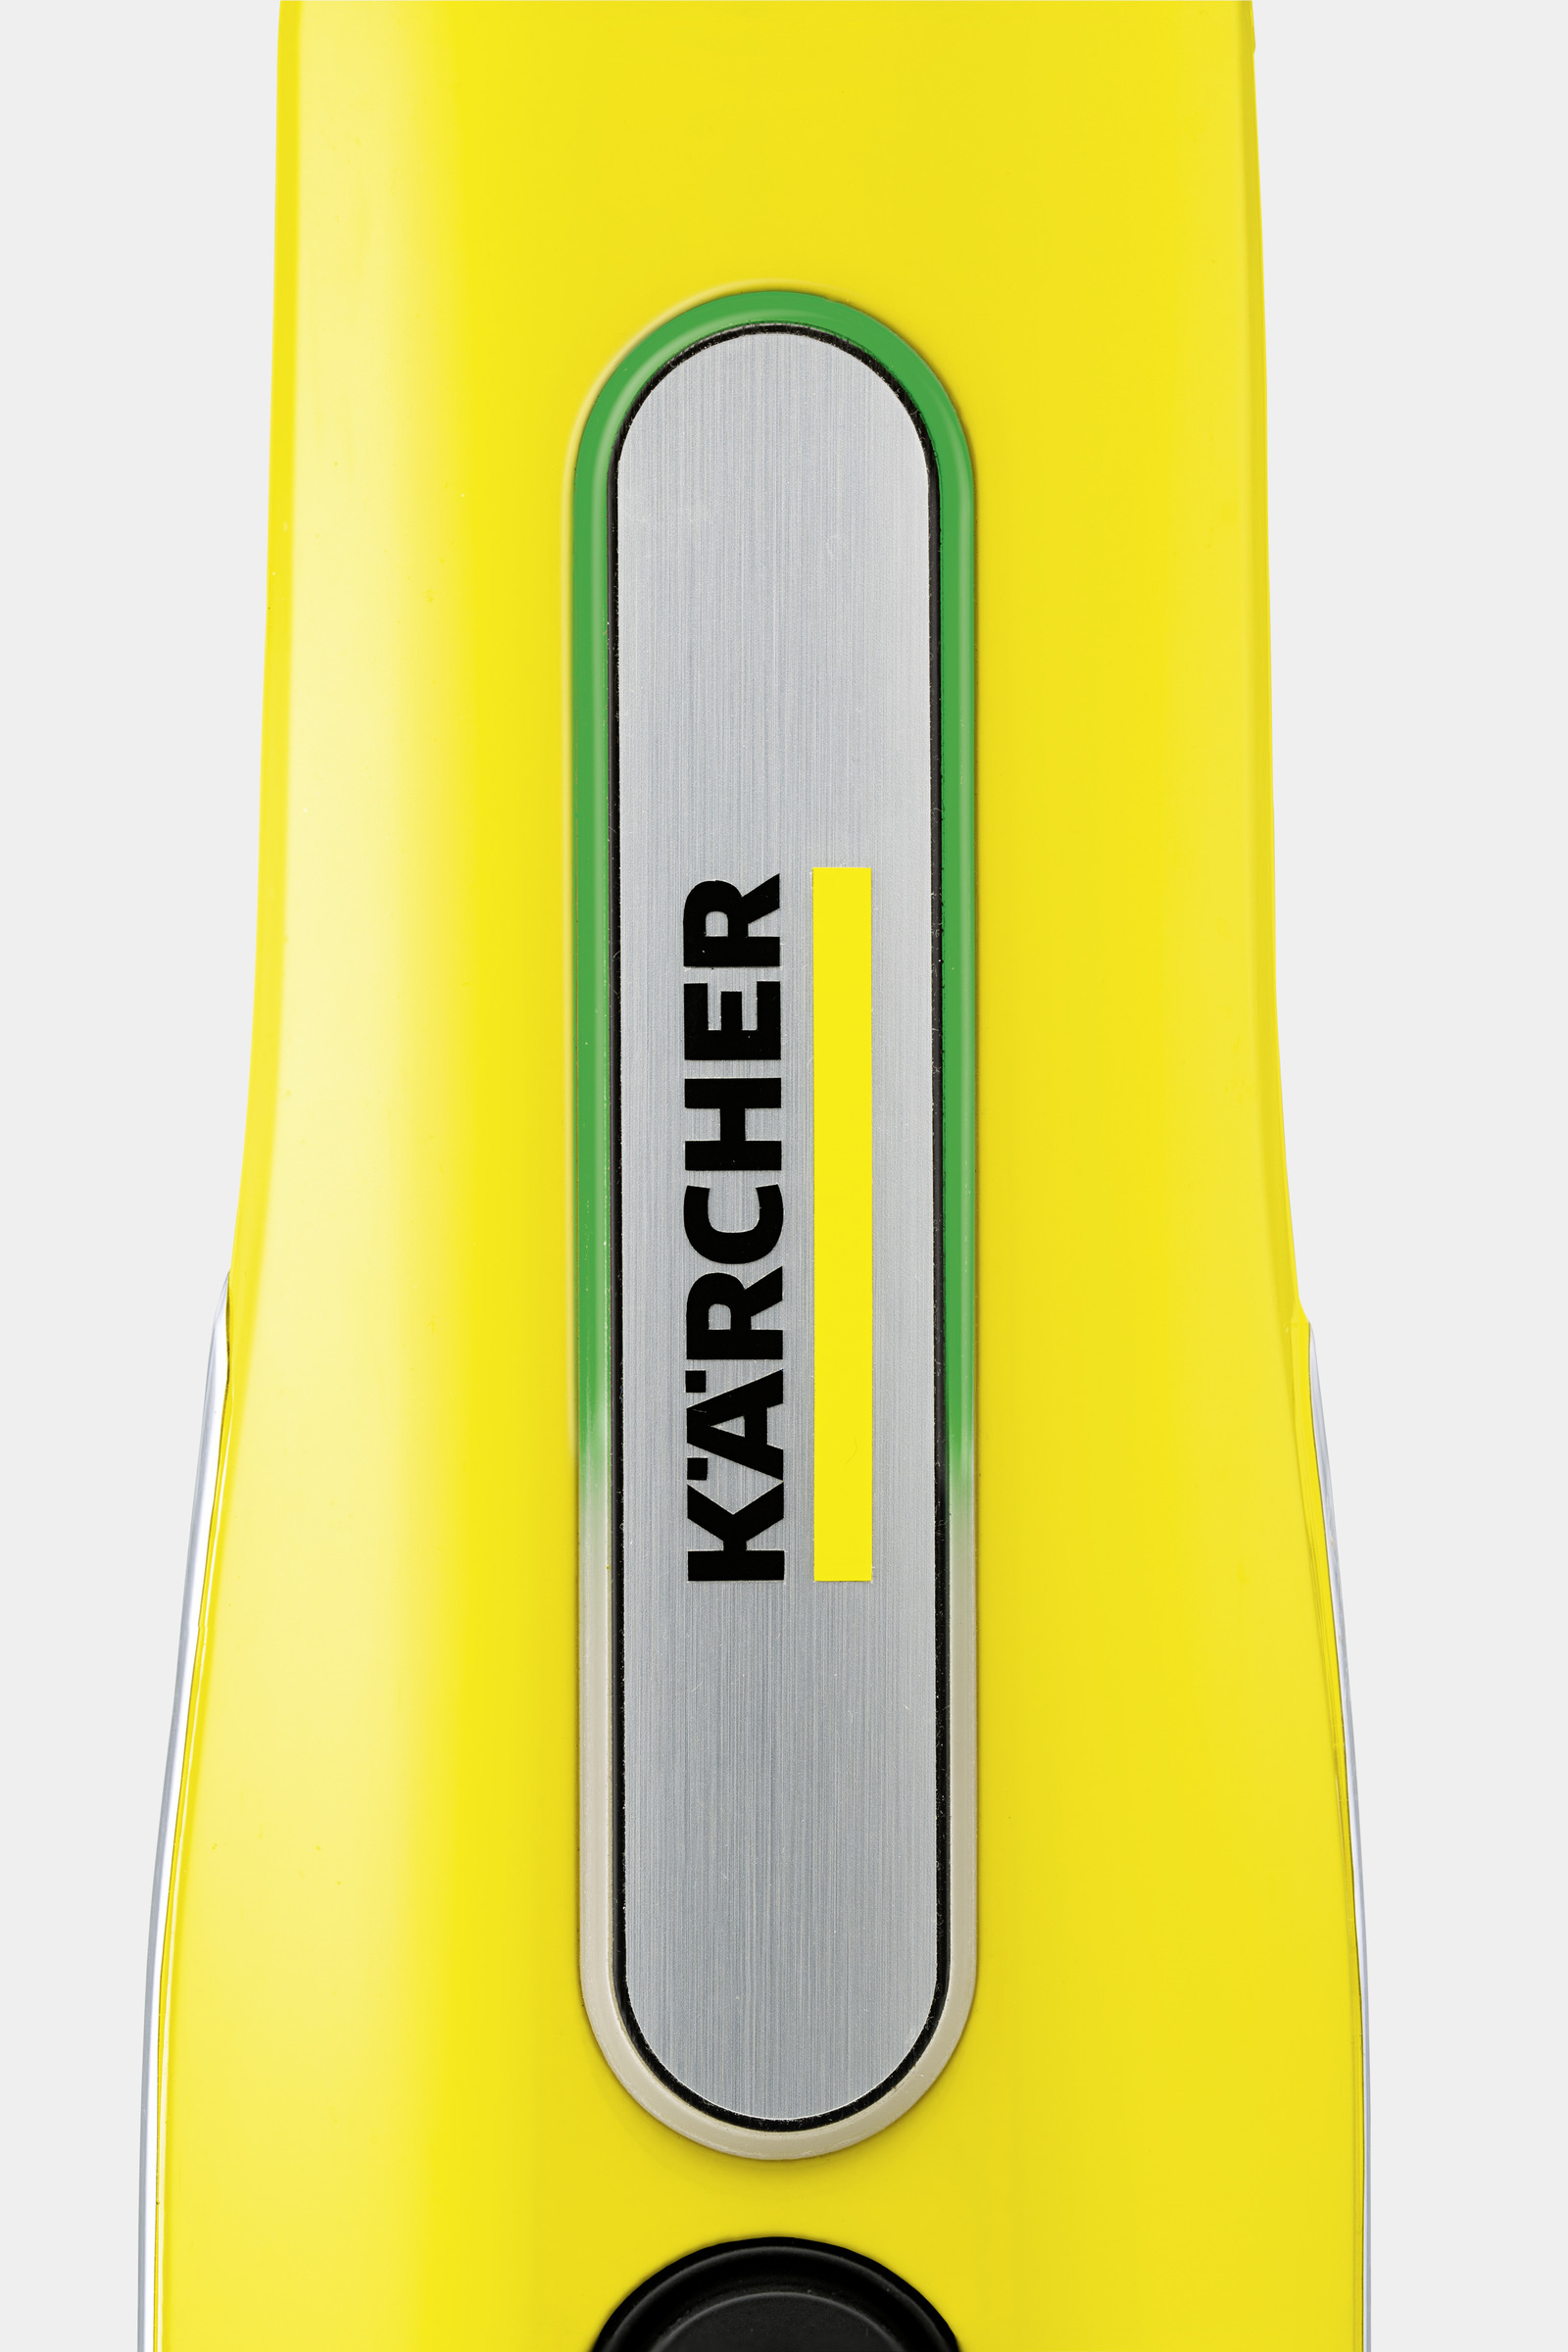 Kärcher SC 3 - Limpiador a vapor portátil multisuperficie con accesorios,  sin productos químicos, calentamiento rápido de 40 segundos, vapor  continuo